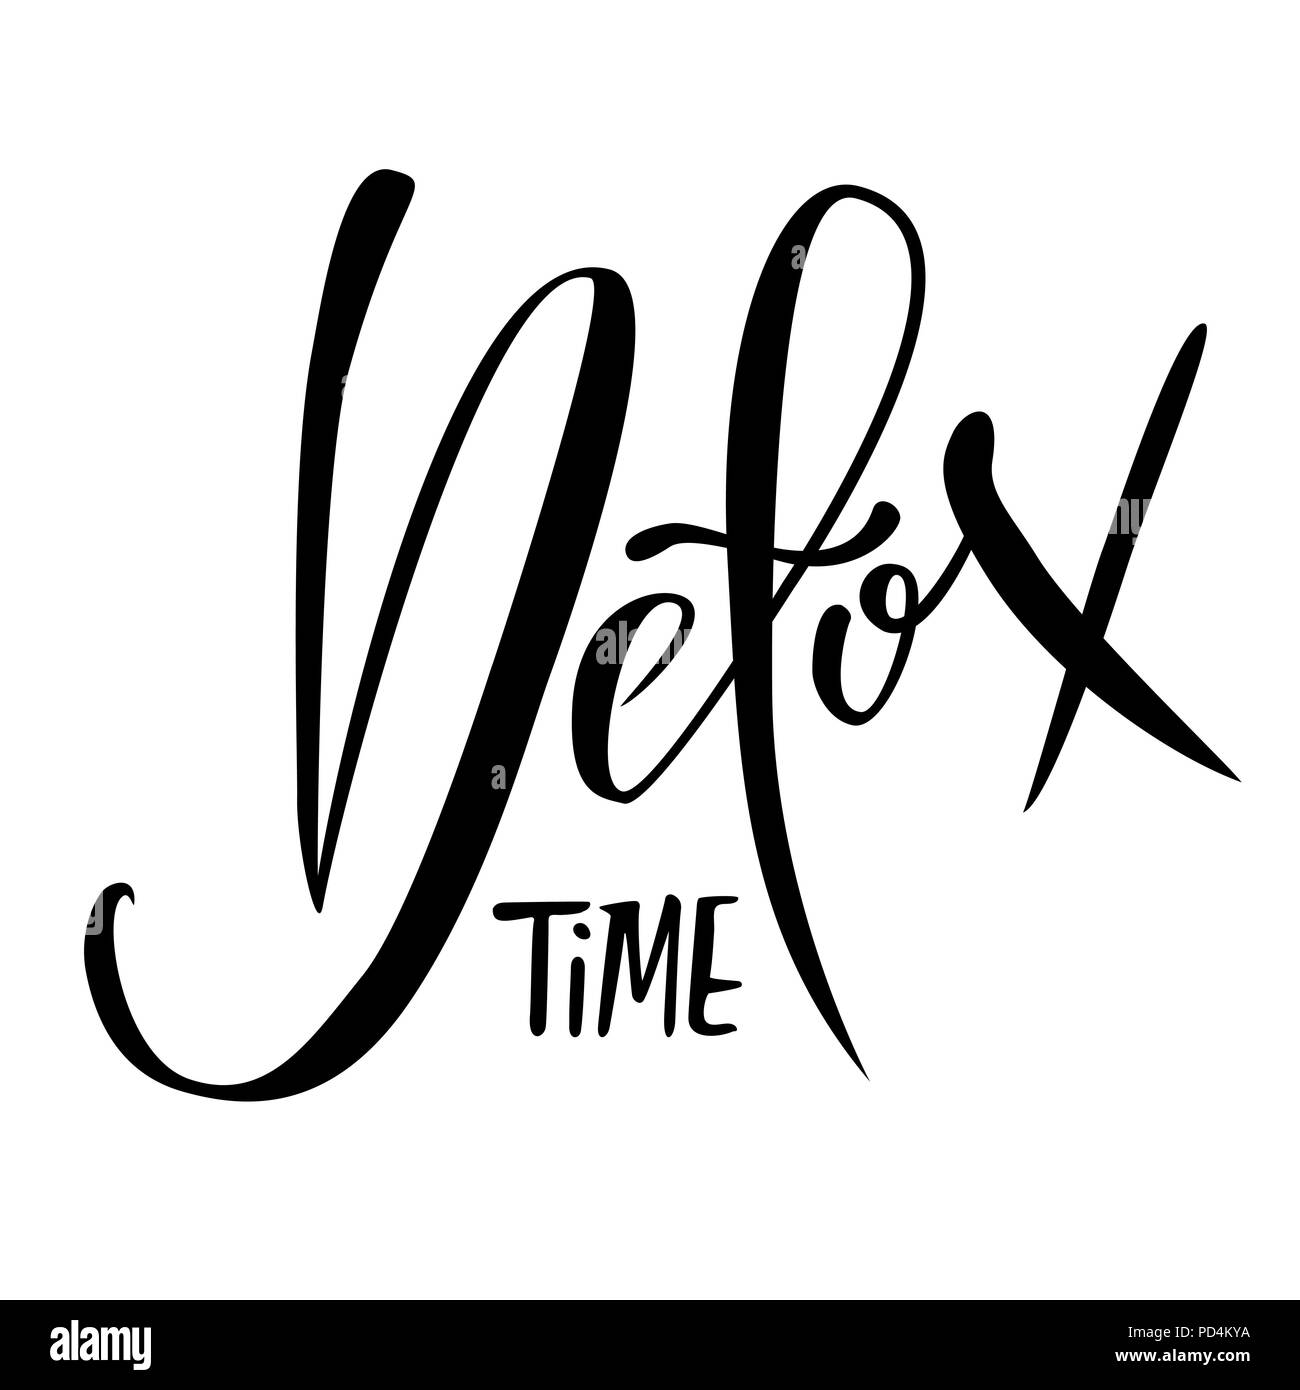 Detox tempo. Digita moderno lettering. Tipografia banner. Illustrazione Vettoriale. Illustrazione Vettoriale